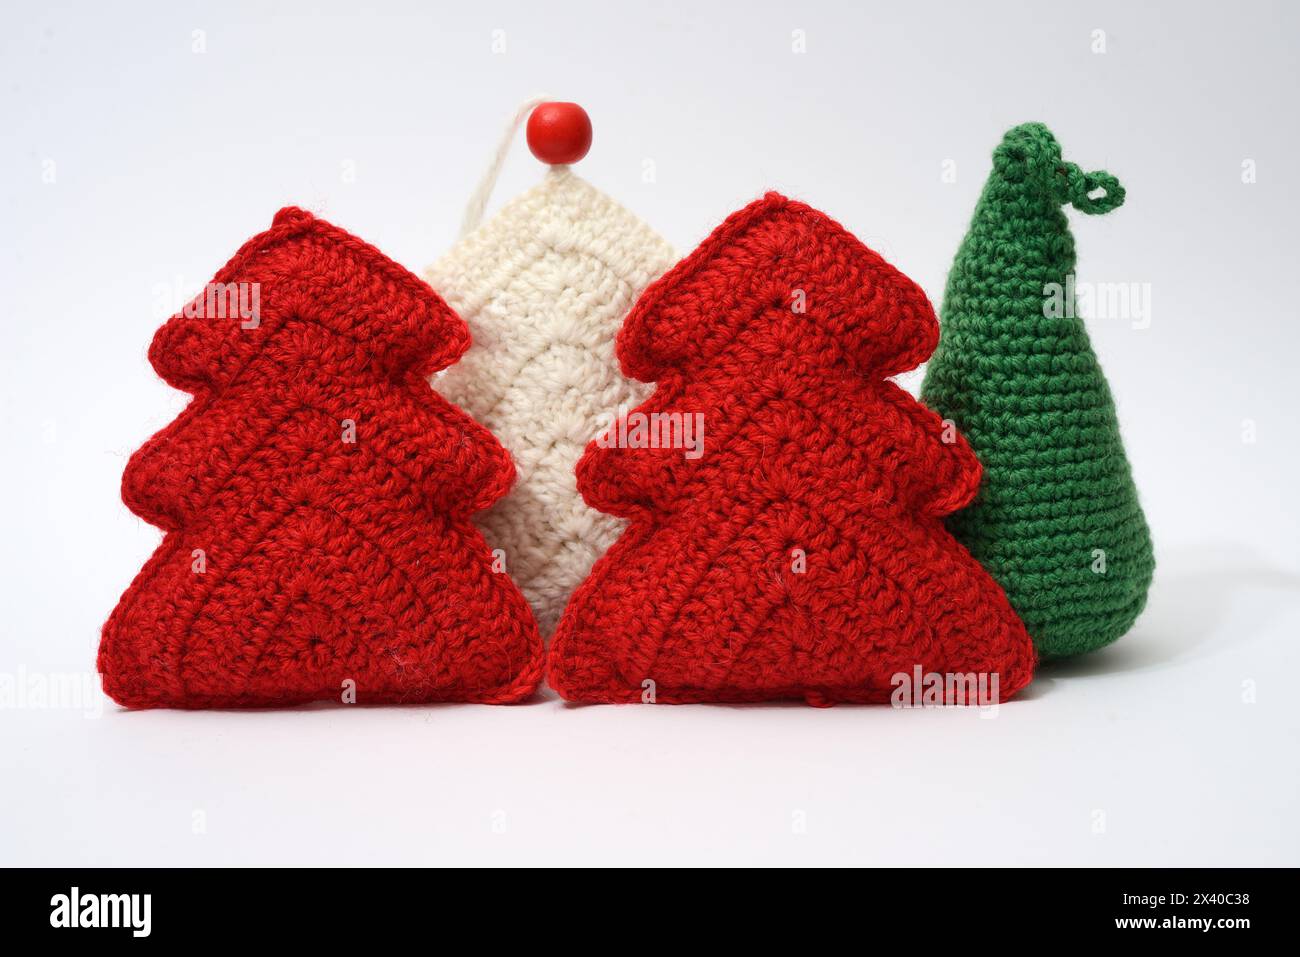 Lebendige Häkelbäume mit festlichen roten Ornamenten verleihen dieser handgemachten weihnachtsszene einen gemütlichen Charme Stockfoto